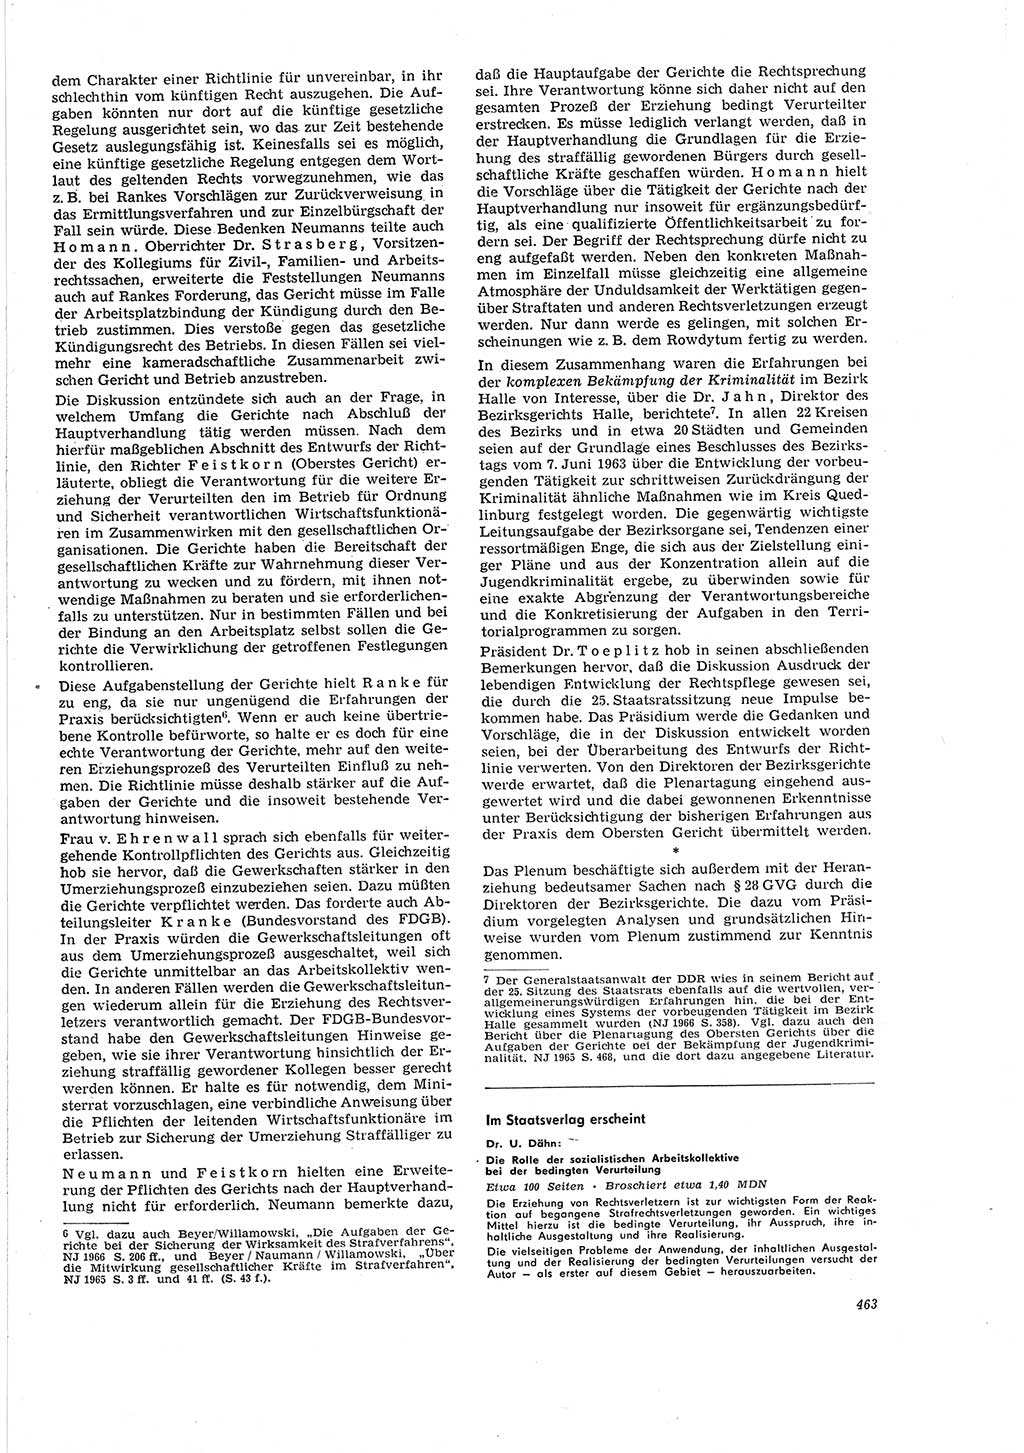 Neue Justiz (NJ), Zeitschrift für Recht und Rechtswissenschaft [Deutsche Demokratische Republik (DDR)], 20. Jahrgang 1966, Seite 463 (NJ DDR 1966, S. 463)